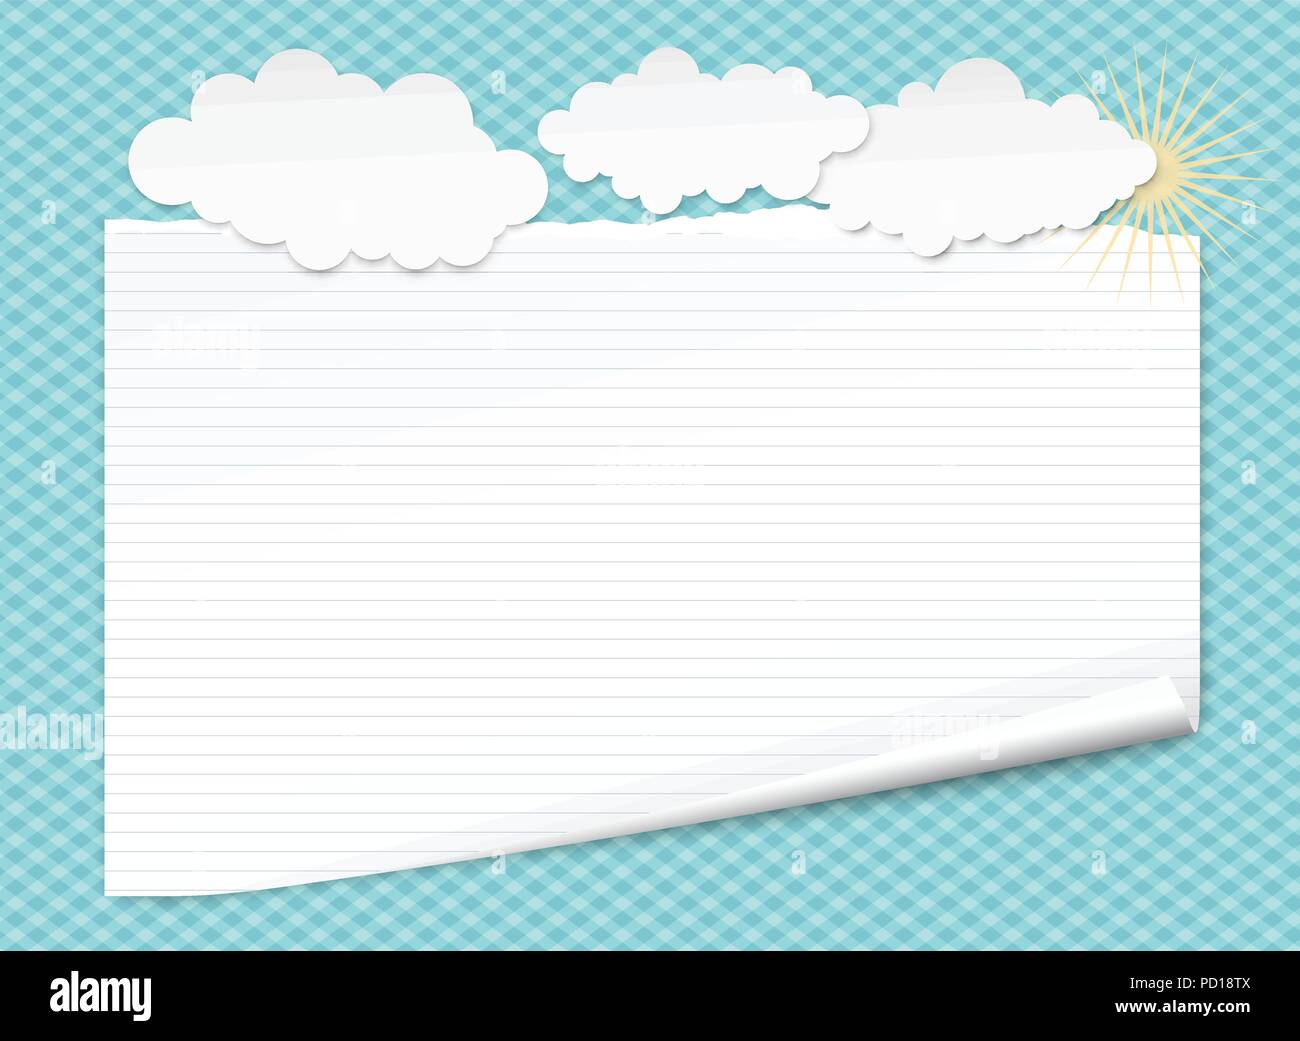 Bianco per notebook rivestito di carta con angolo arricciato per testo o messaggio pubblicitario sul quadrato blu sfondo con nuvole e sole Illustrazione Vettoriale